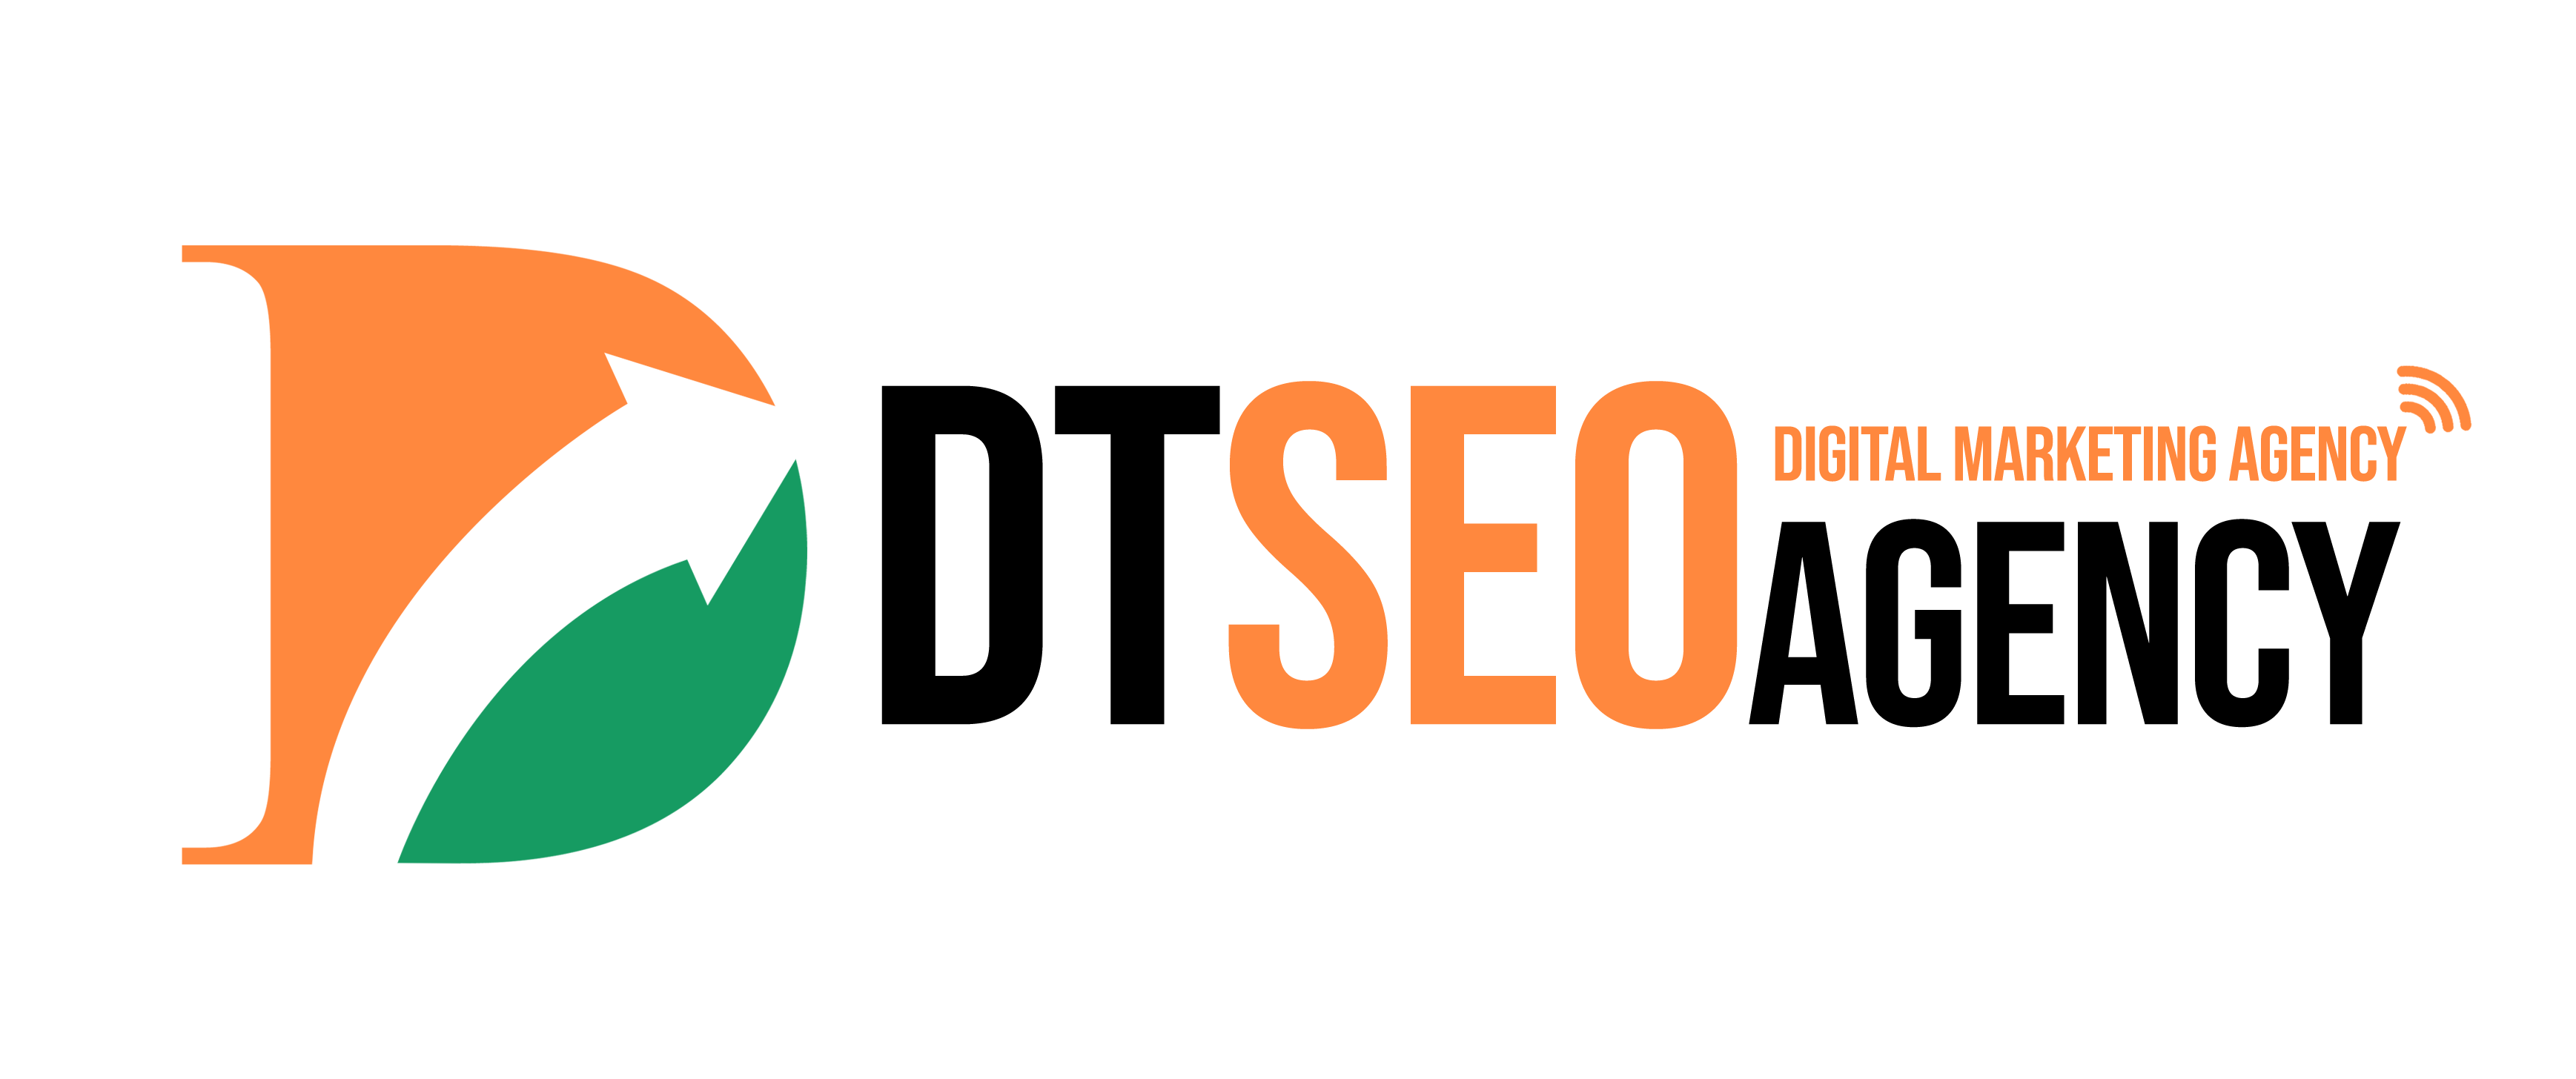 Seo Agency Dublin